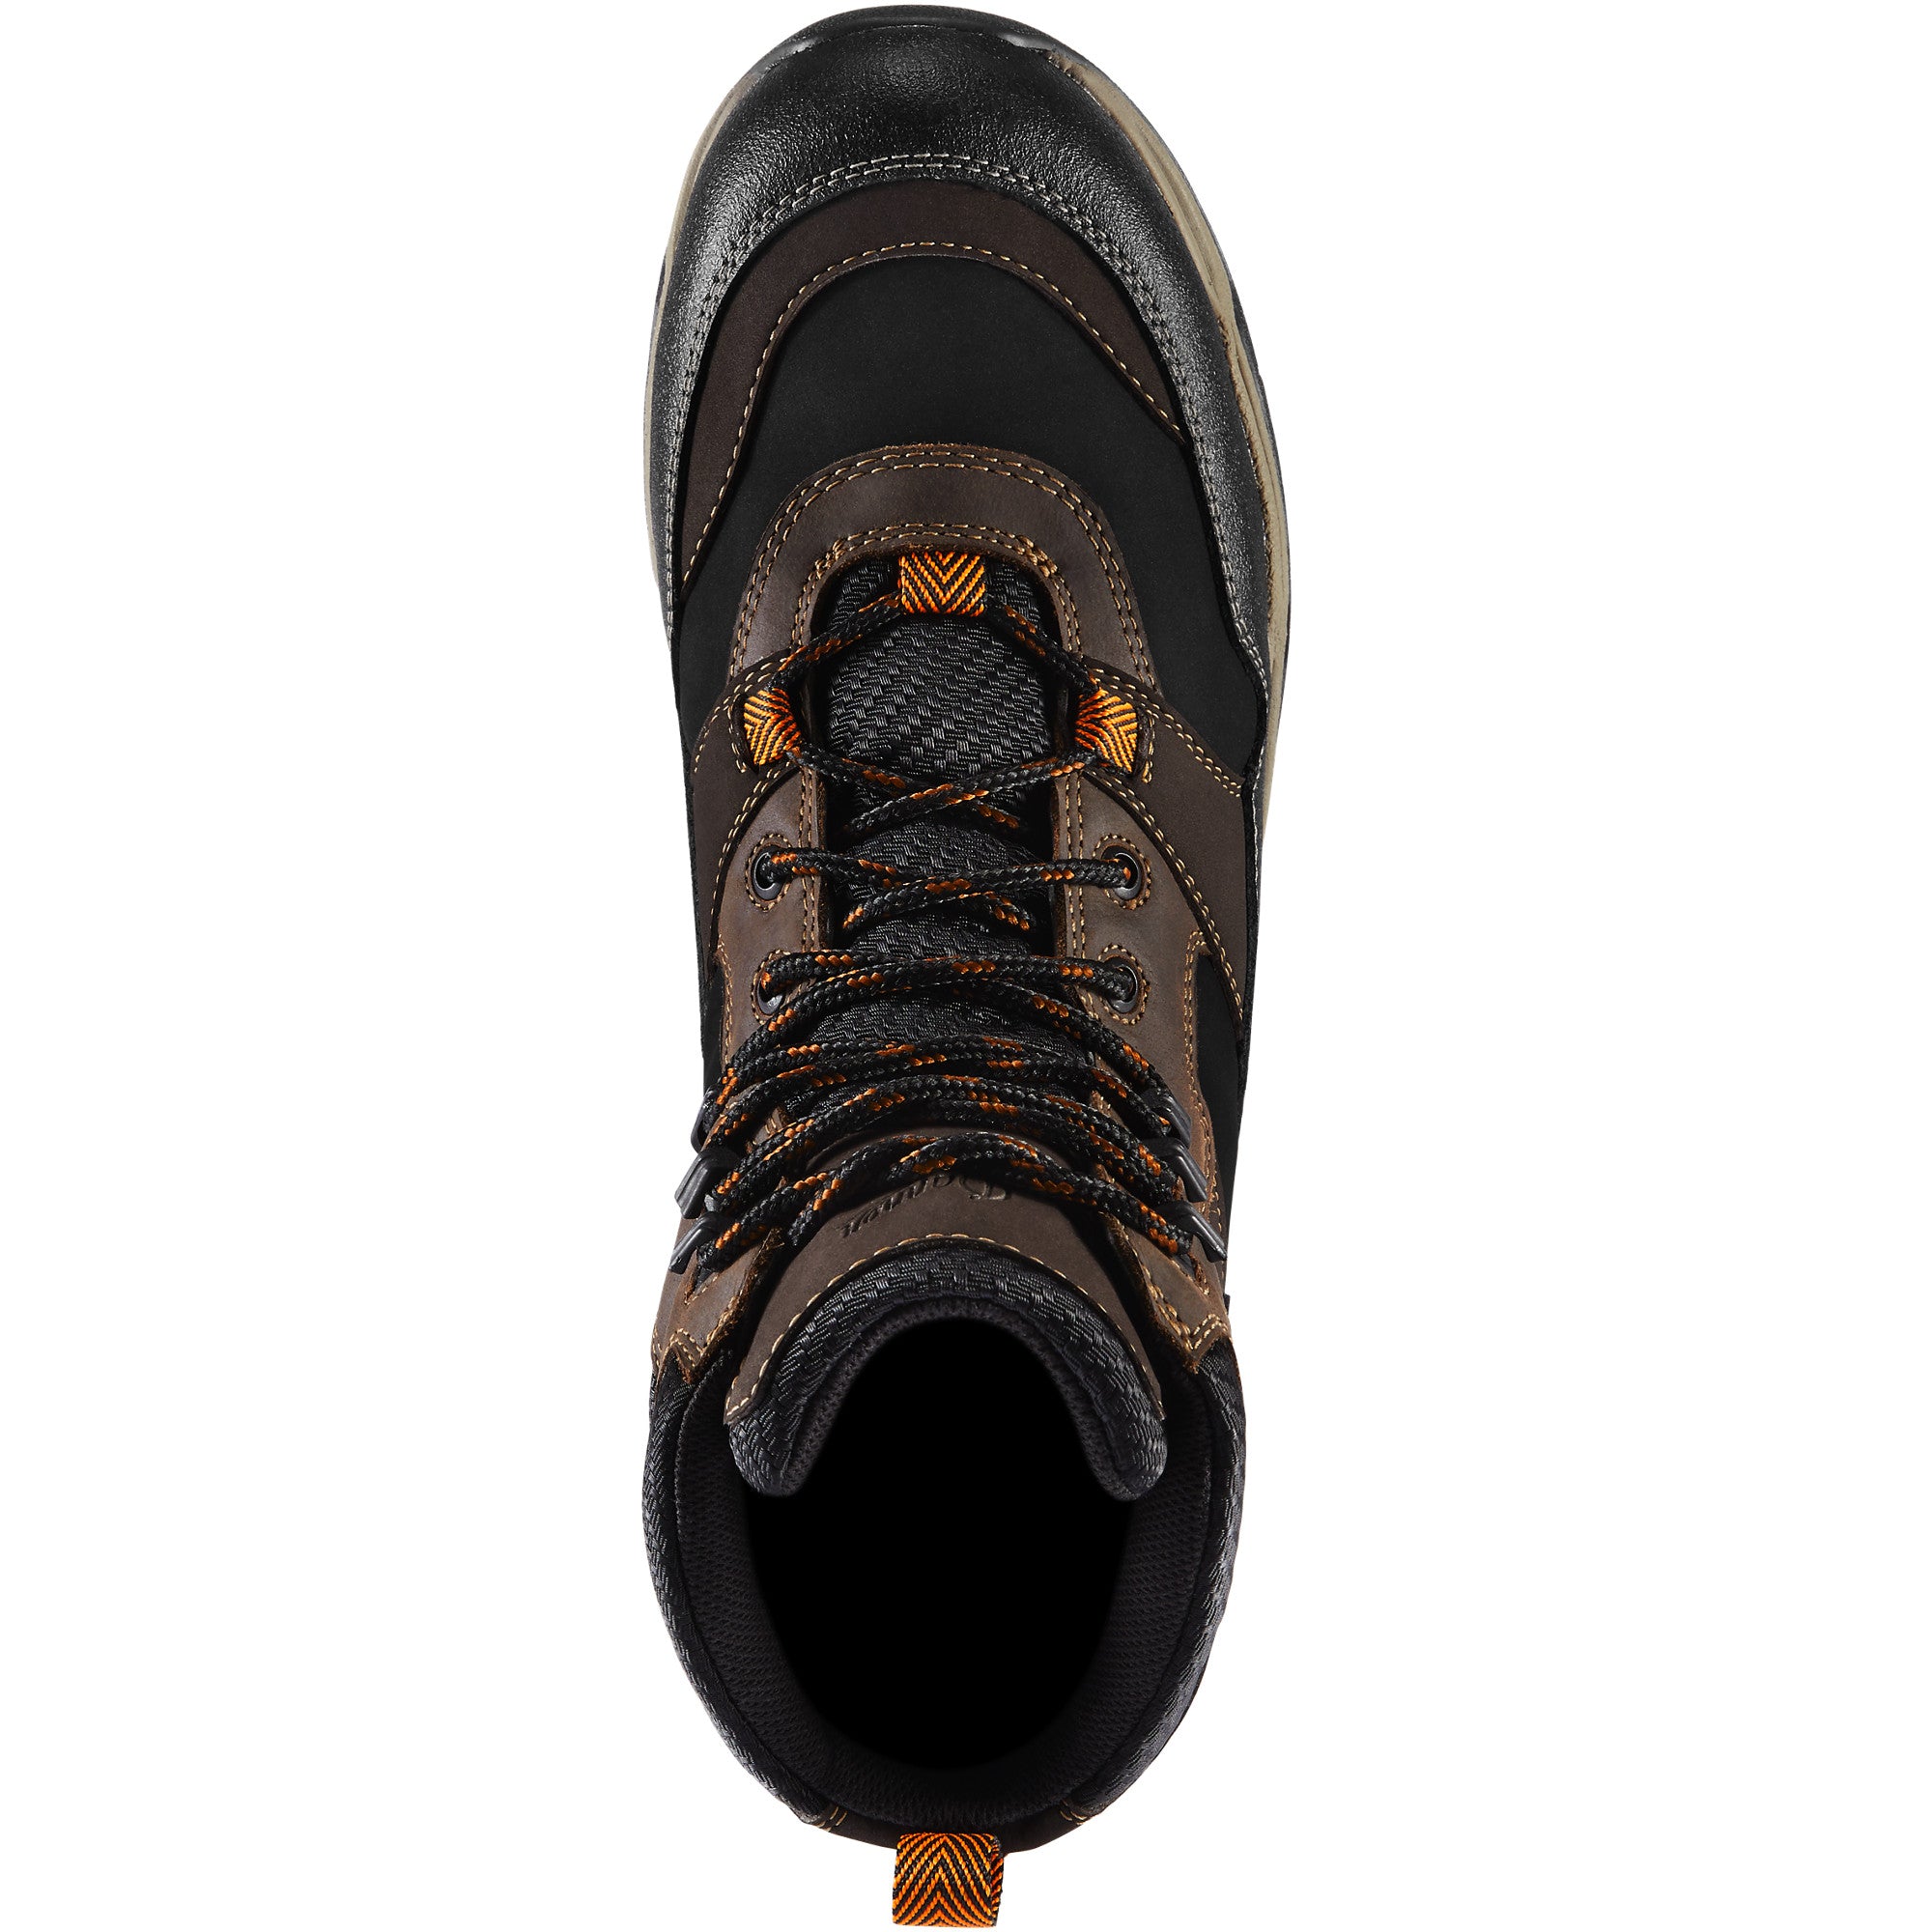 Danner Men's Field ranger 6" Comp Toe WP Work Boot - Brown - 15161  - Overlook Boots